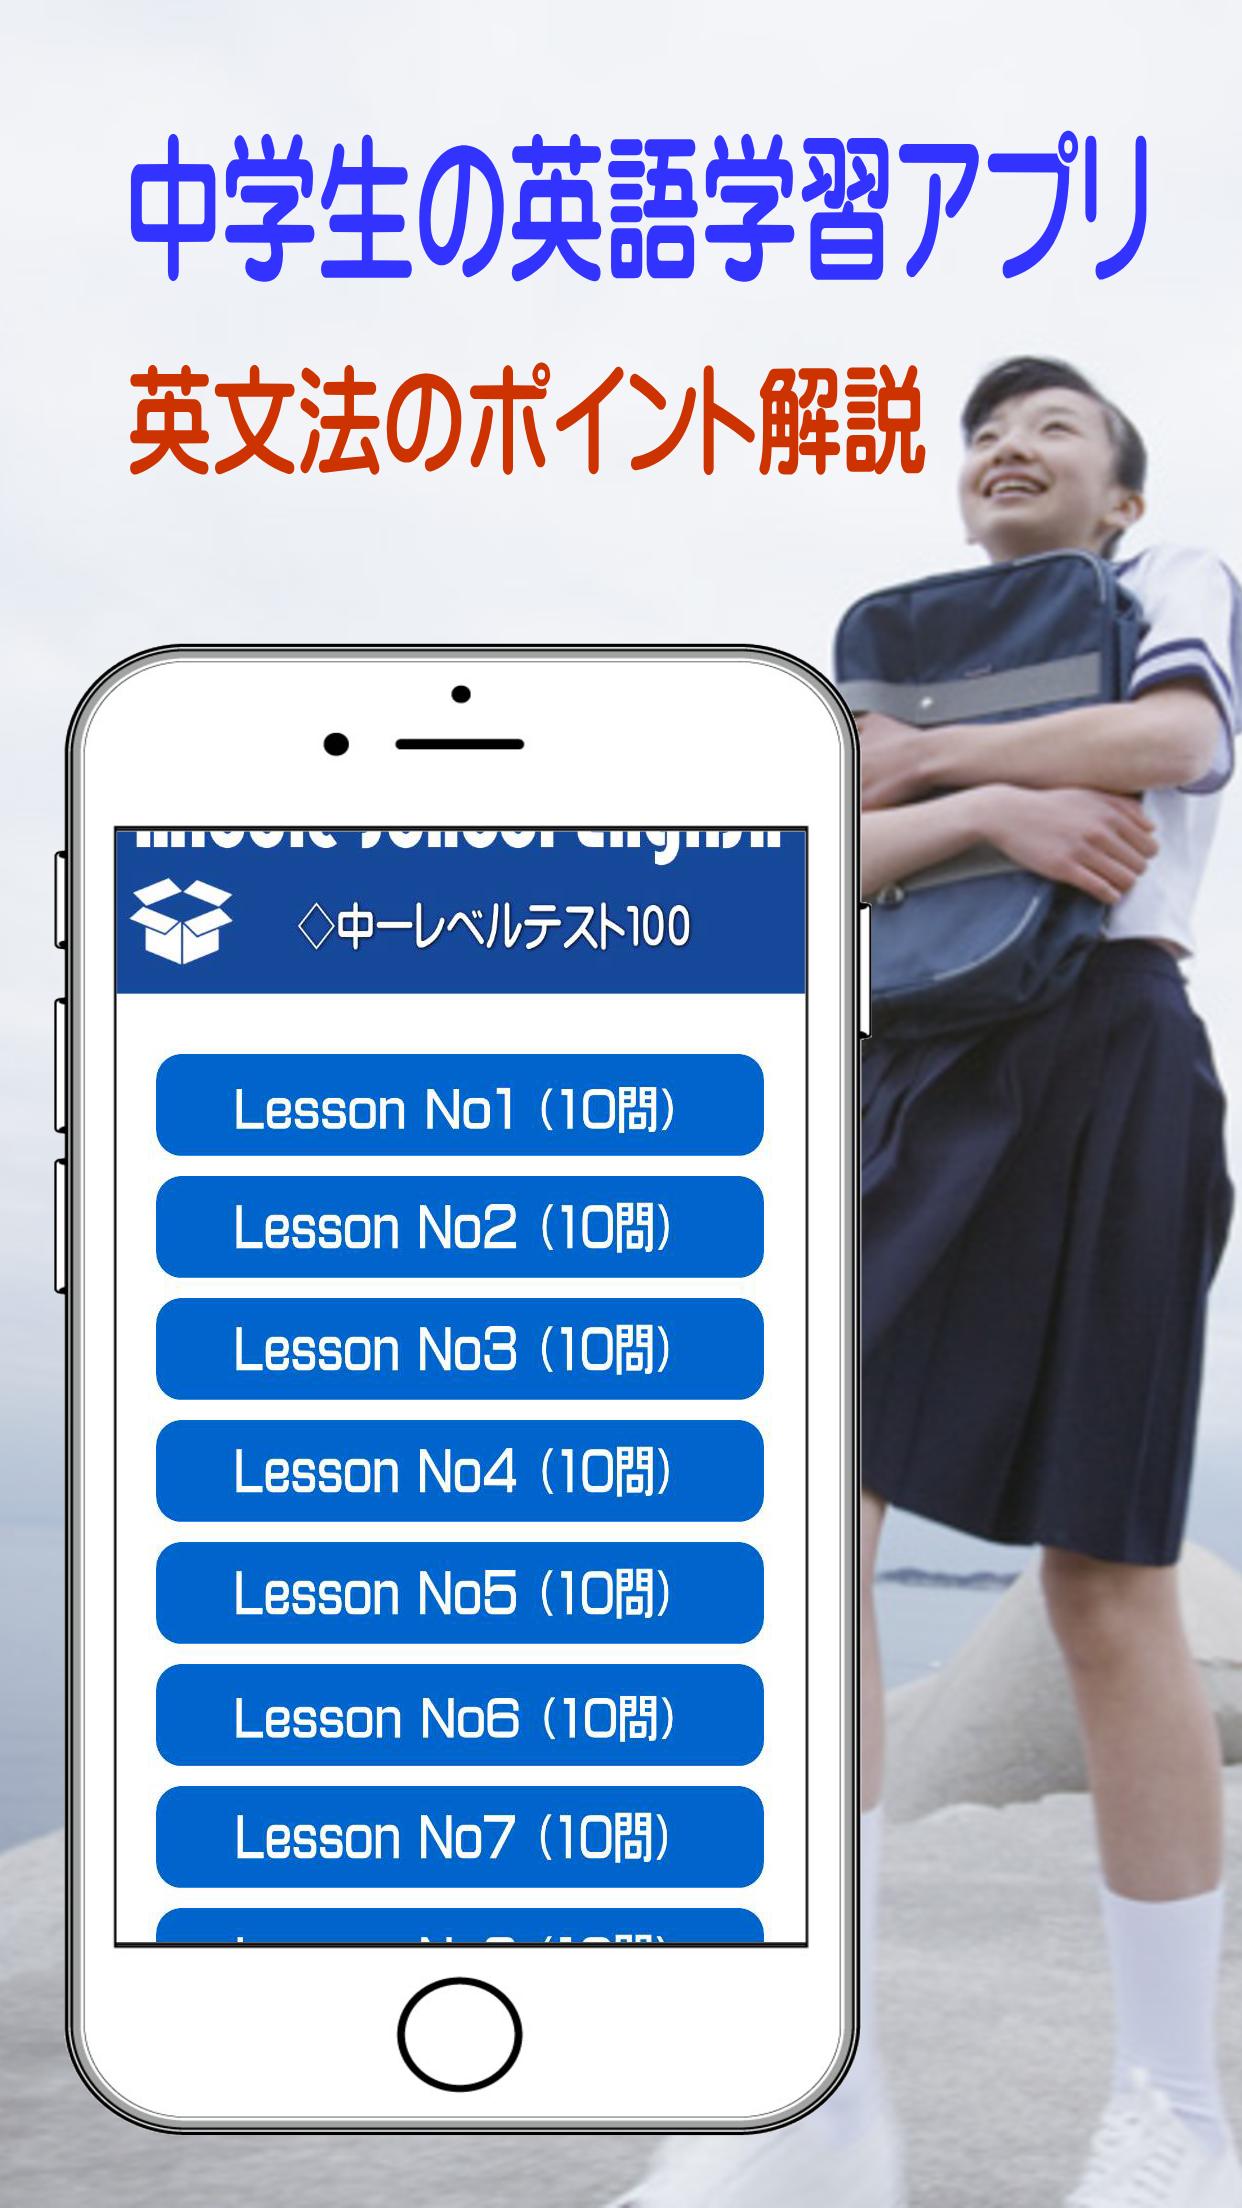 中学生英語 英文法 英単語 リスニングを見て聞いて学ぶアプリ For Android Apk Download